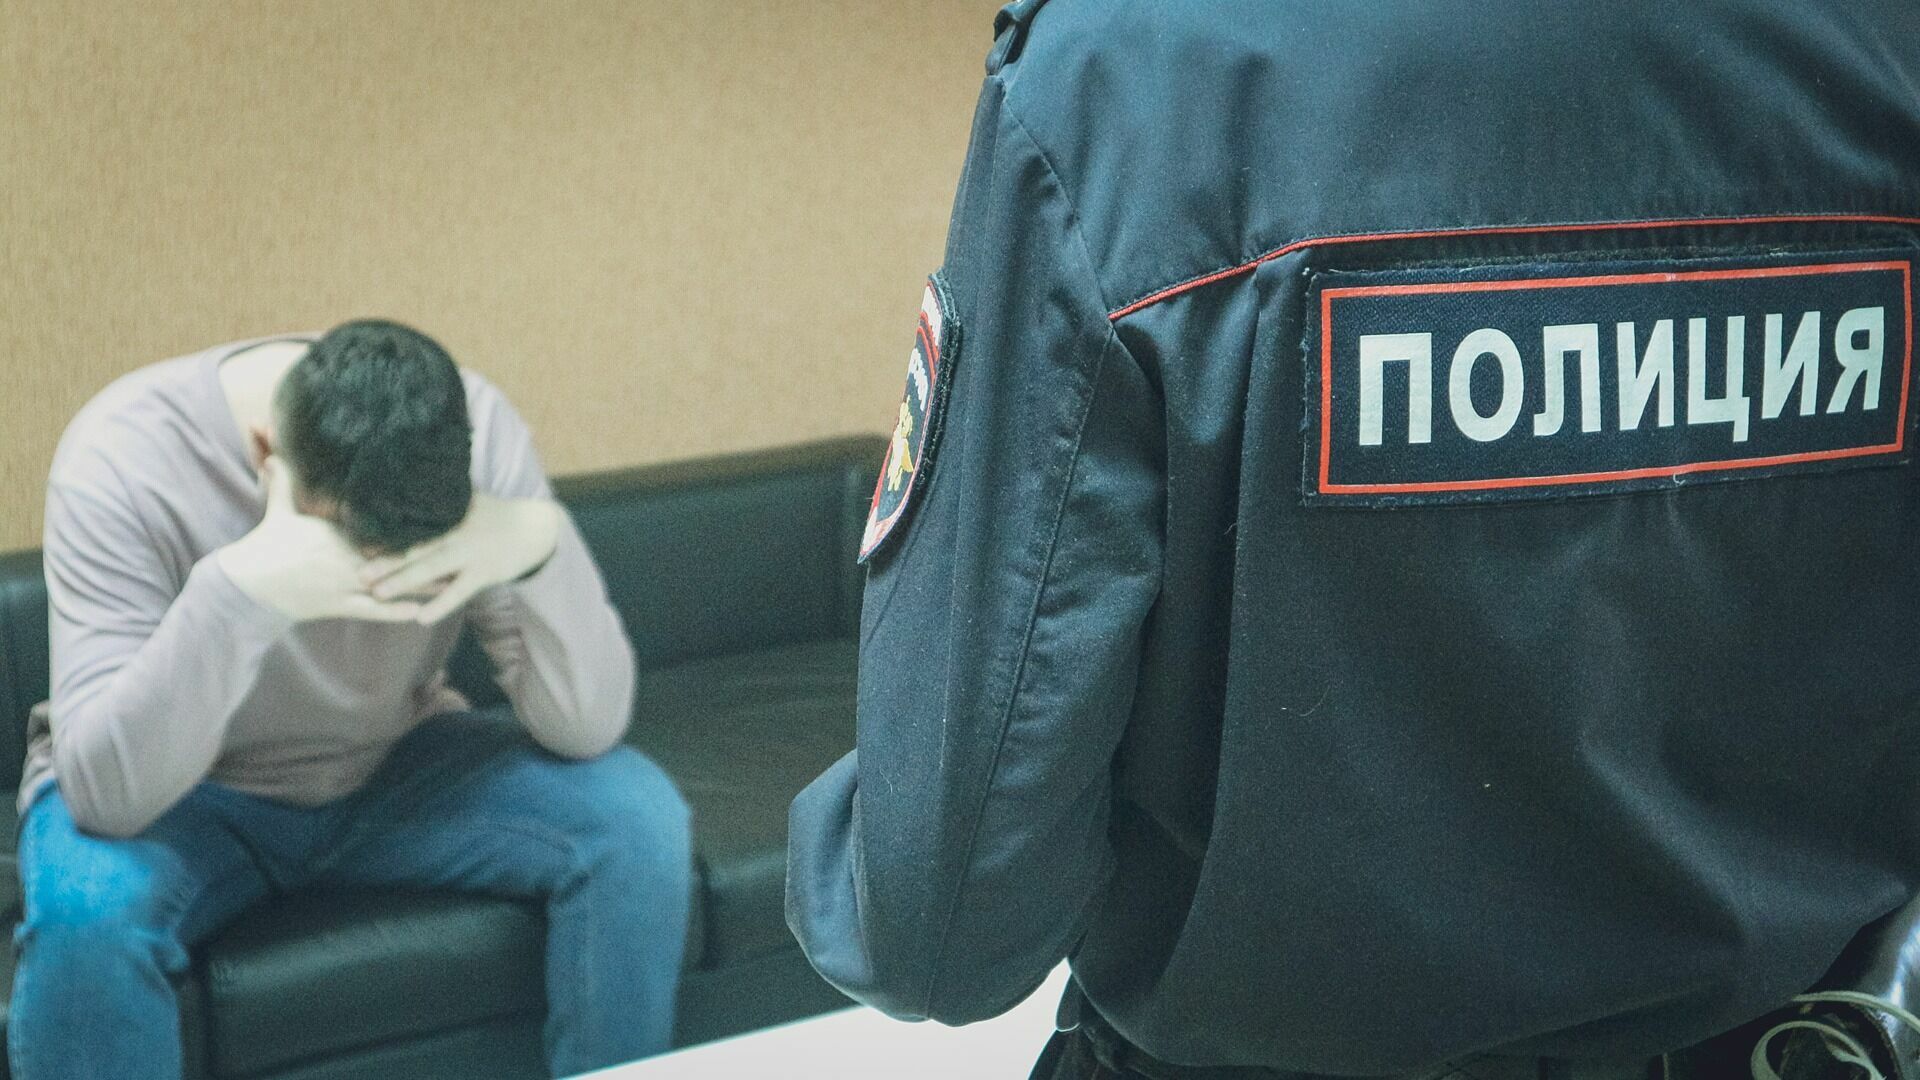 Самый криминальный район Нижнего Новгорода